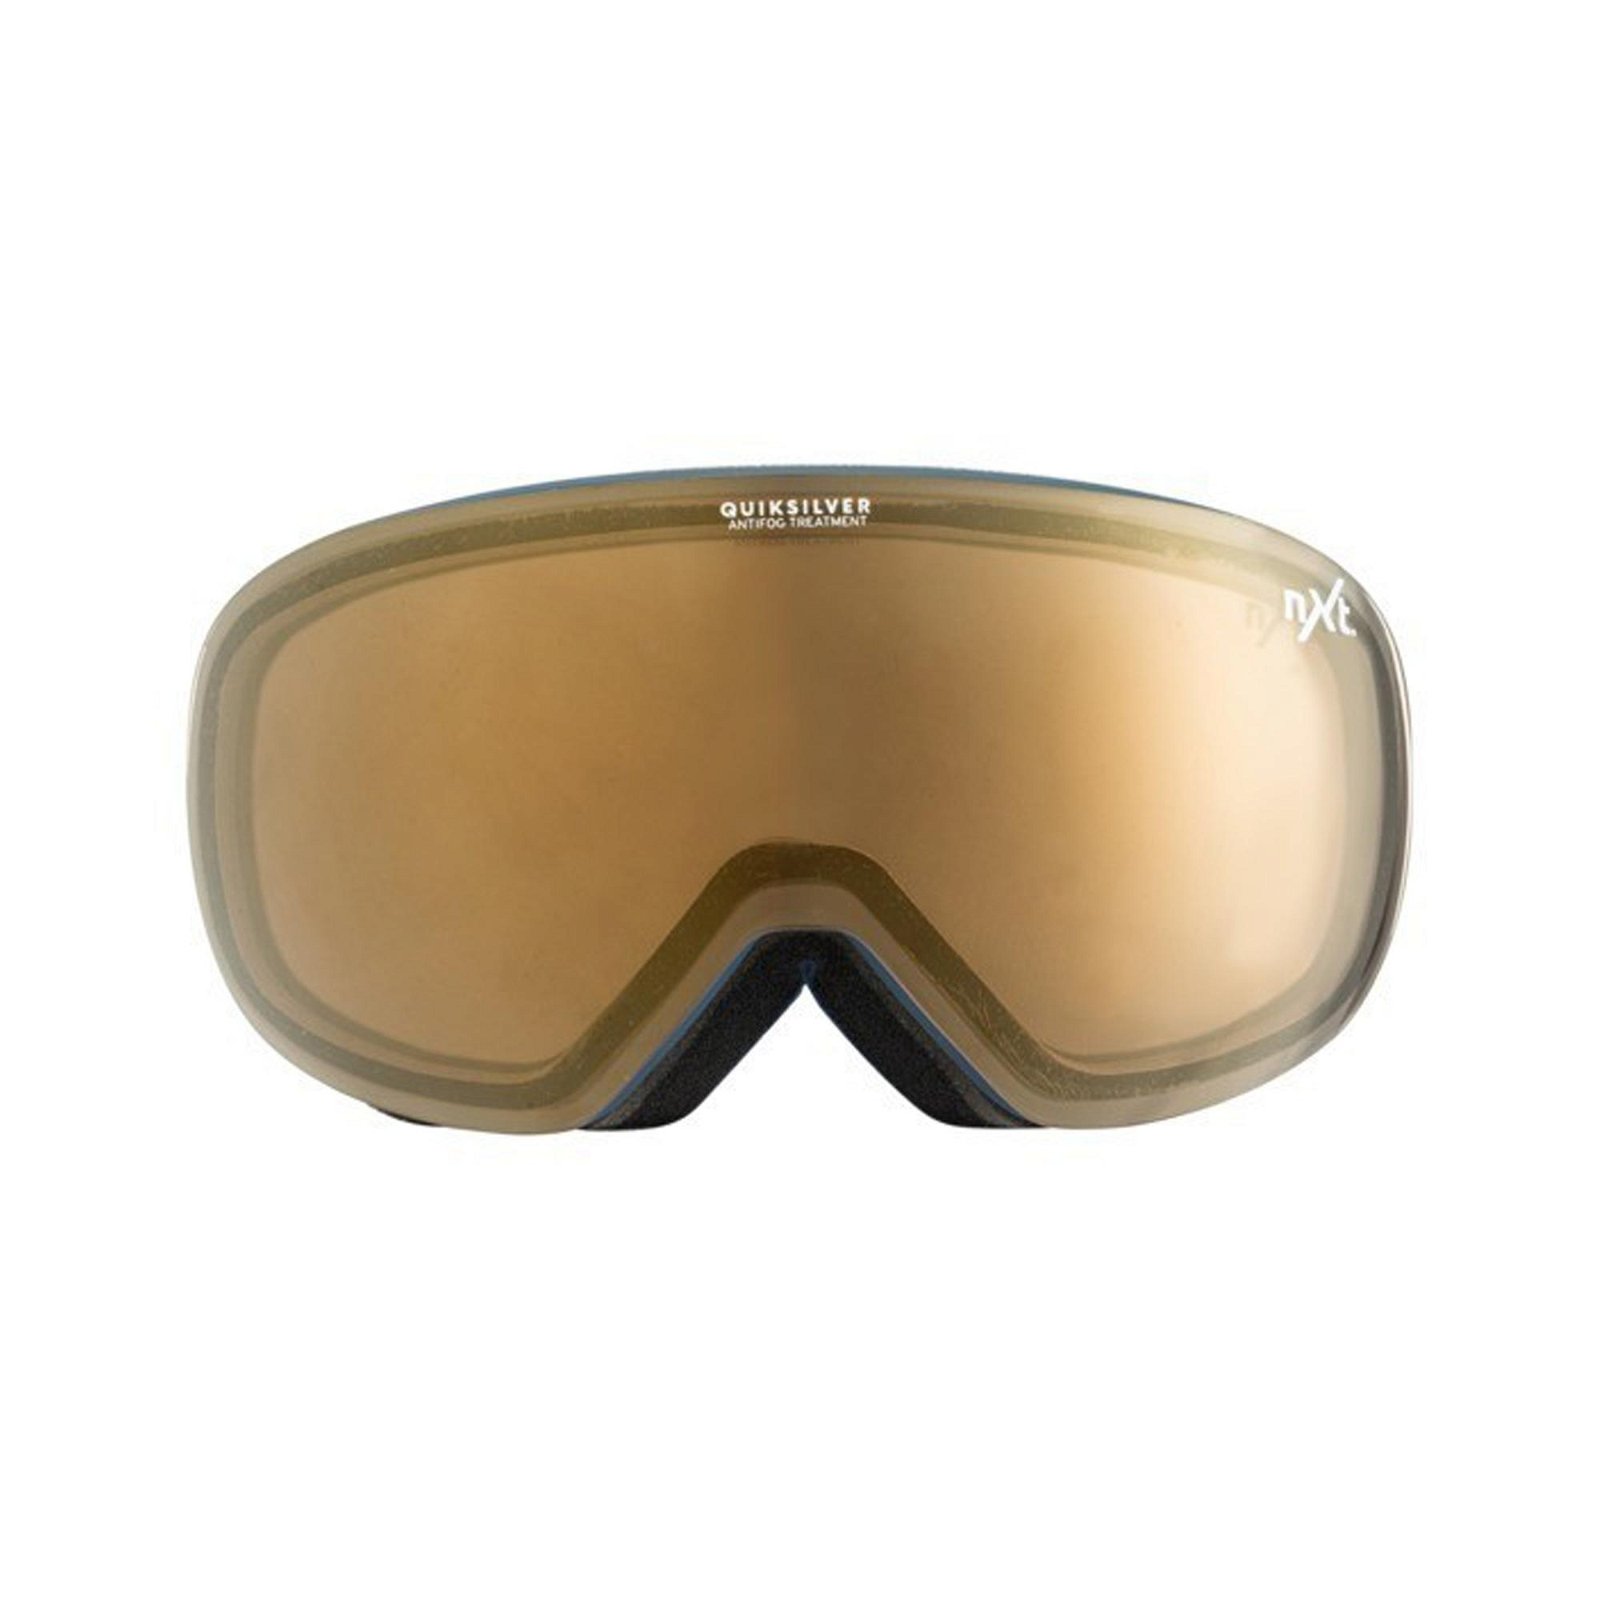 Quiksilver QSR Nxt Kayak/Snowboard Goggle